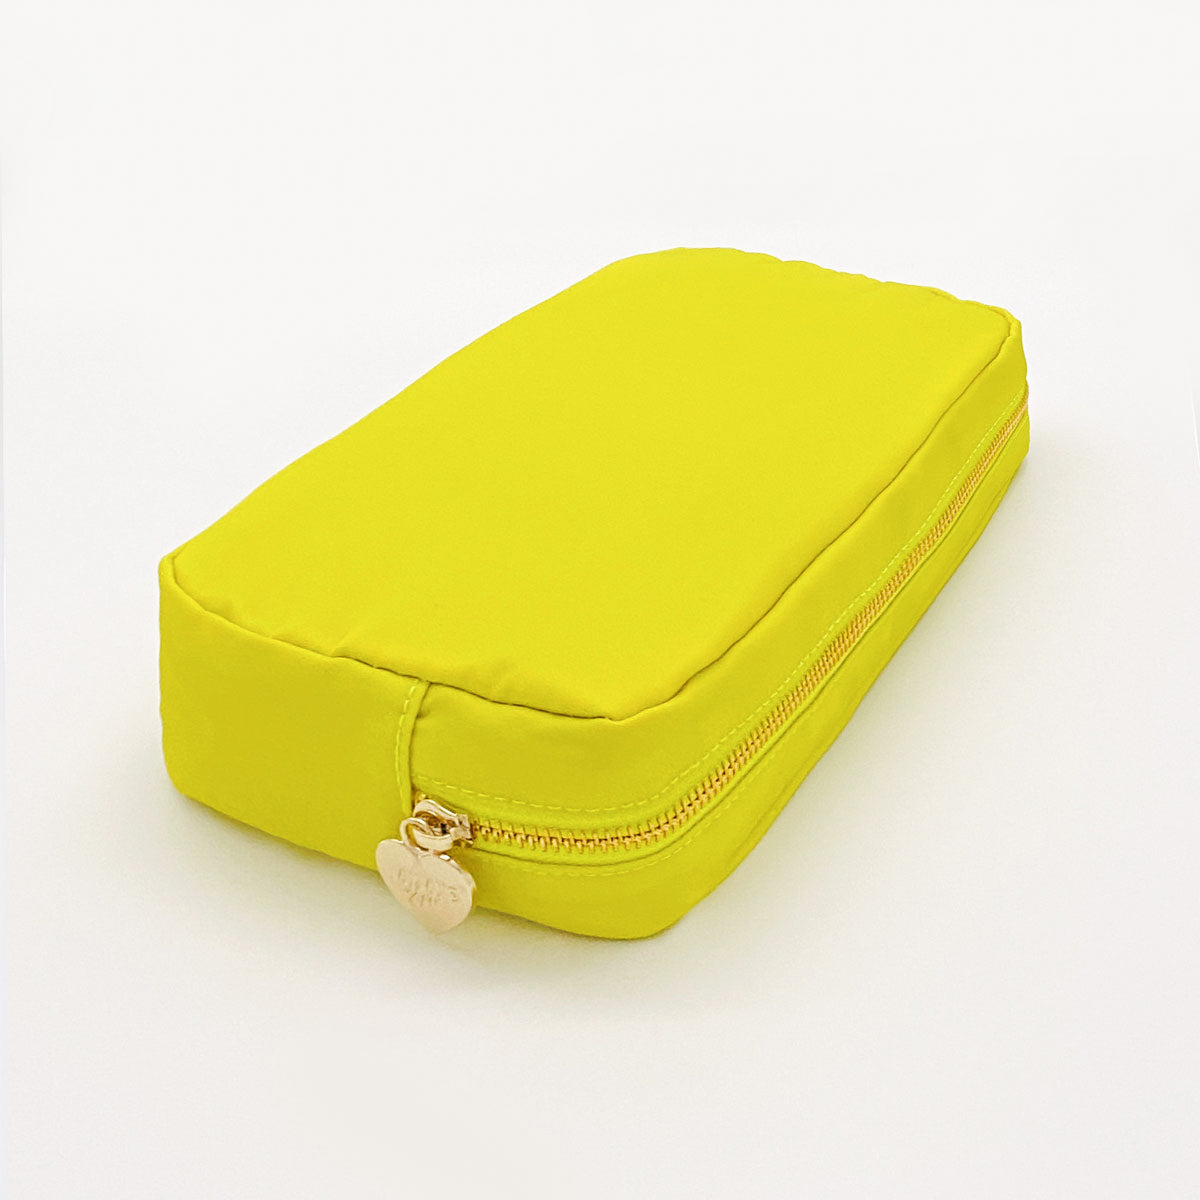 Taschen-Set Nr. 3 Lime Gelb (2 Taschen)